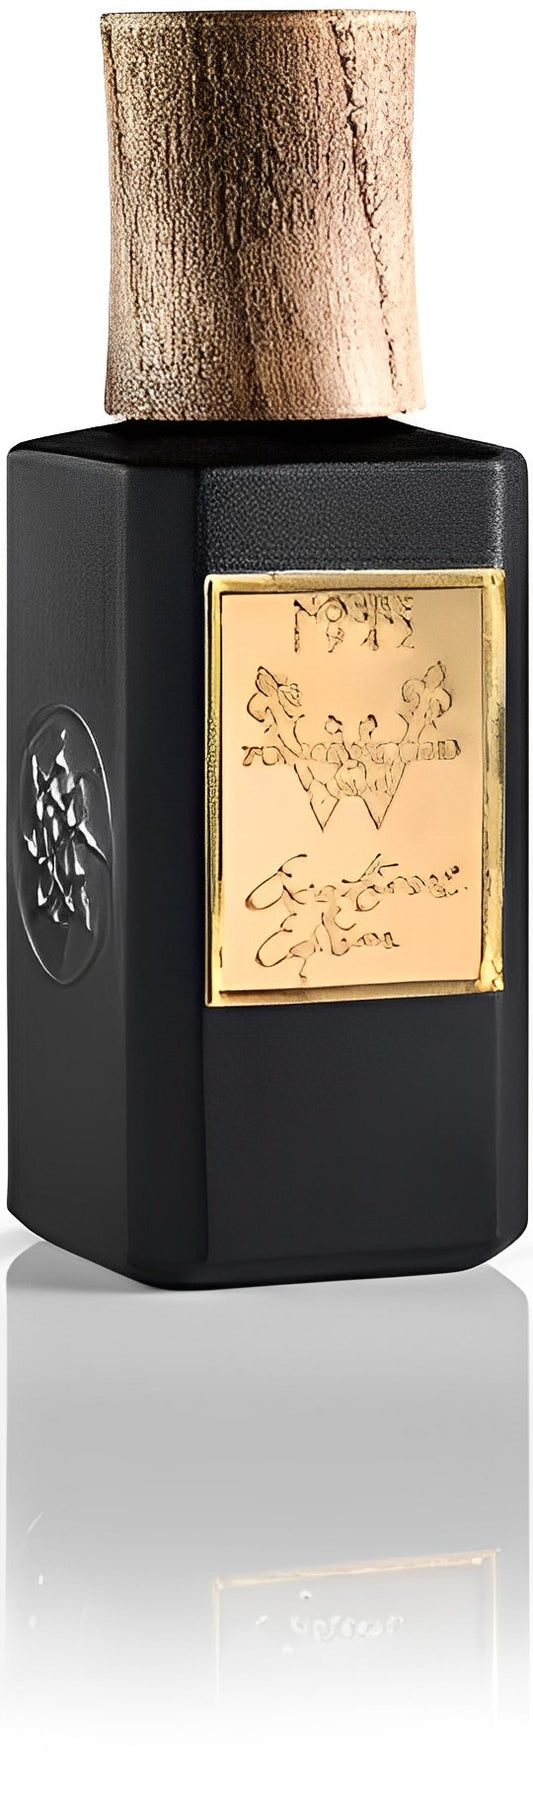 Nobile - Pontevecchio W Exceptional Edition parfum 75ml tester / LADY